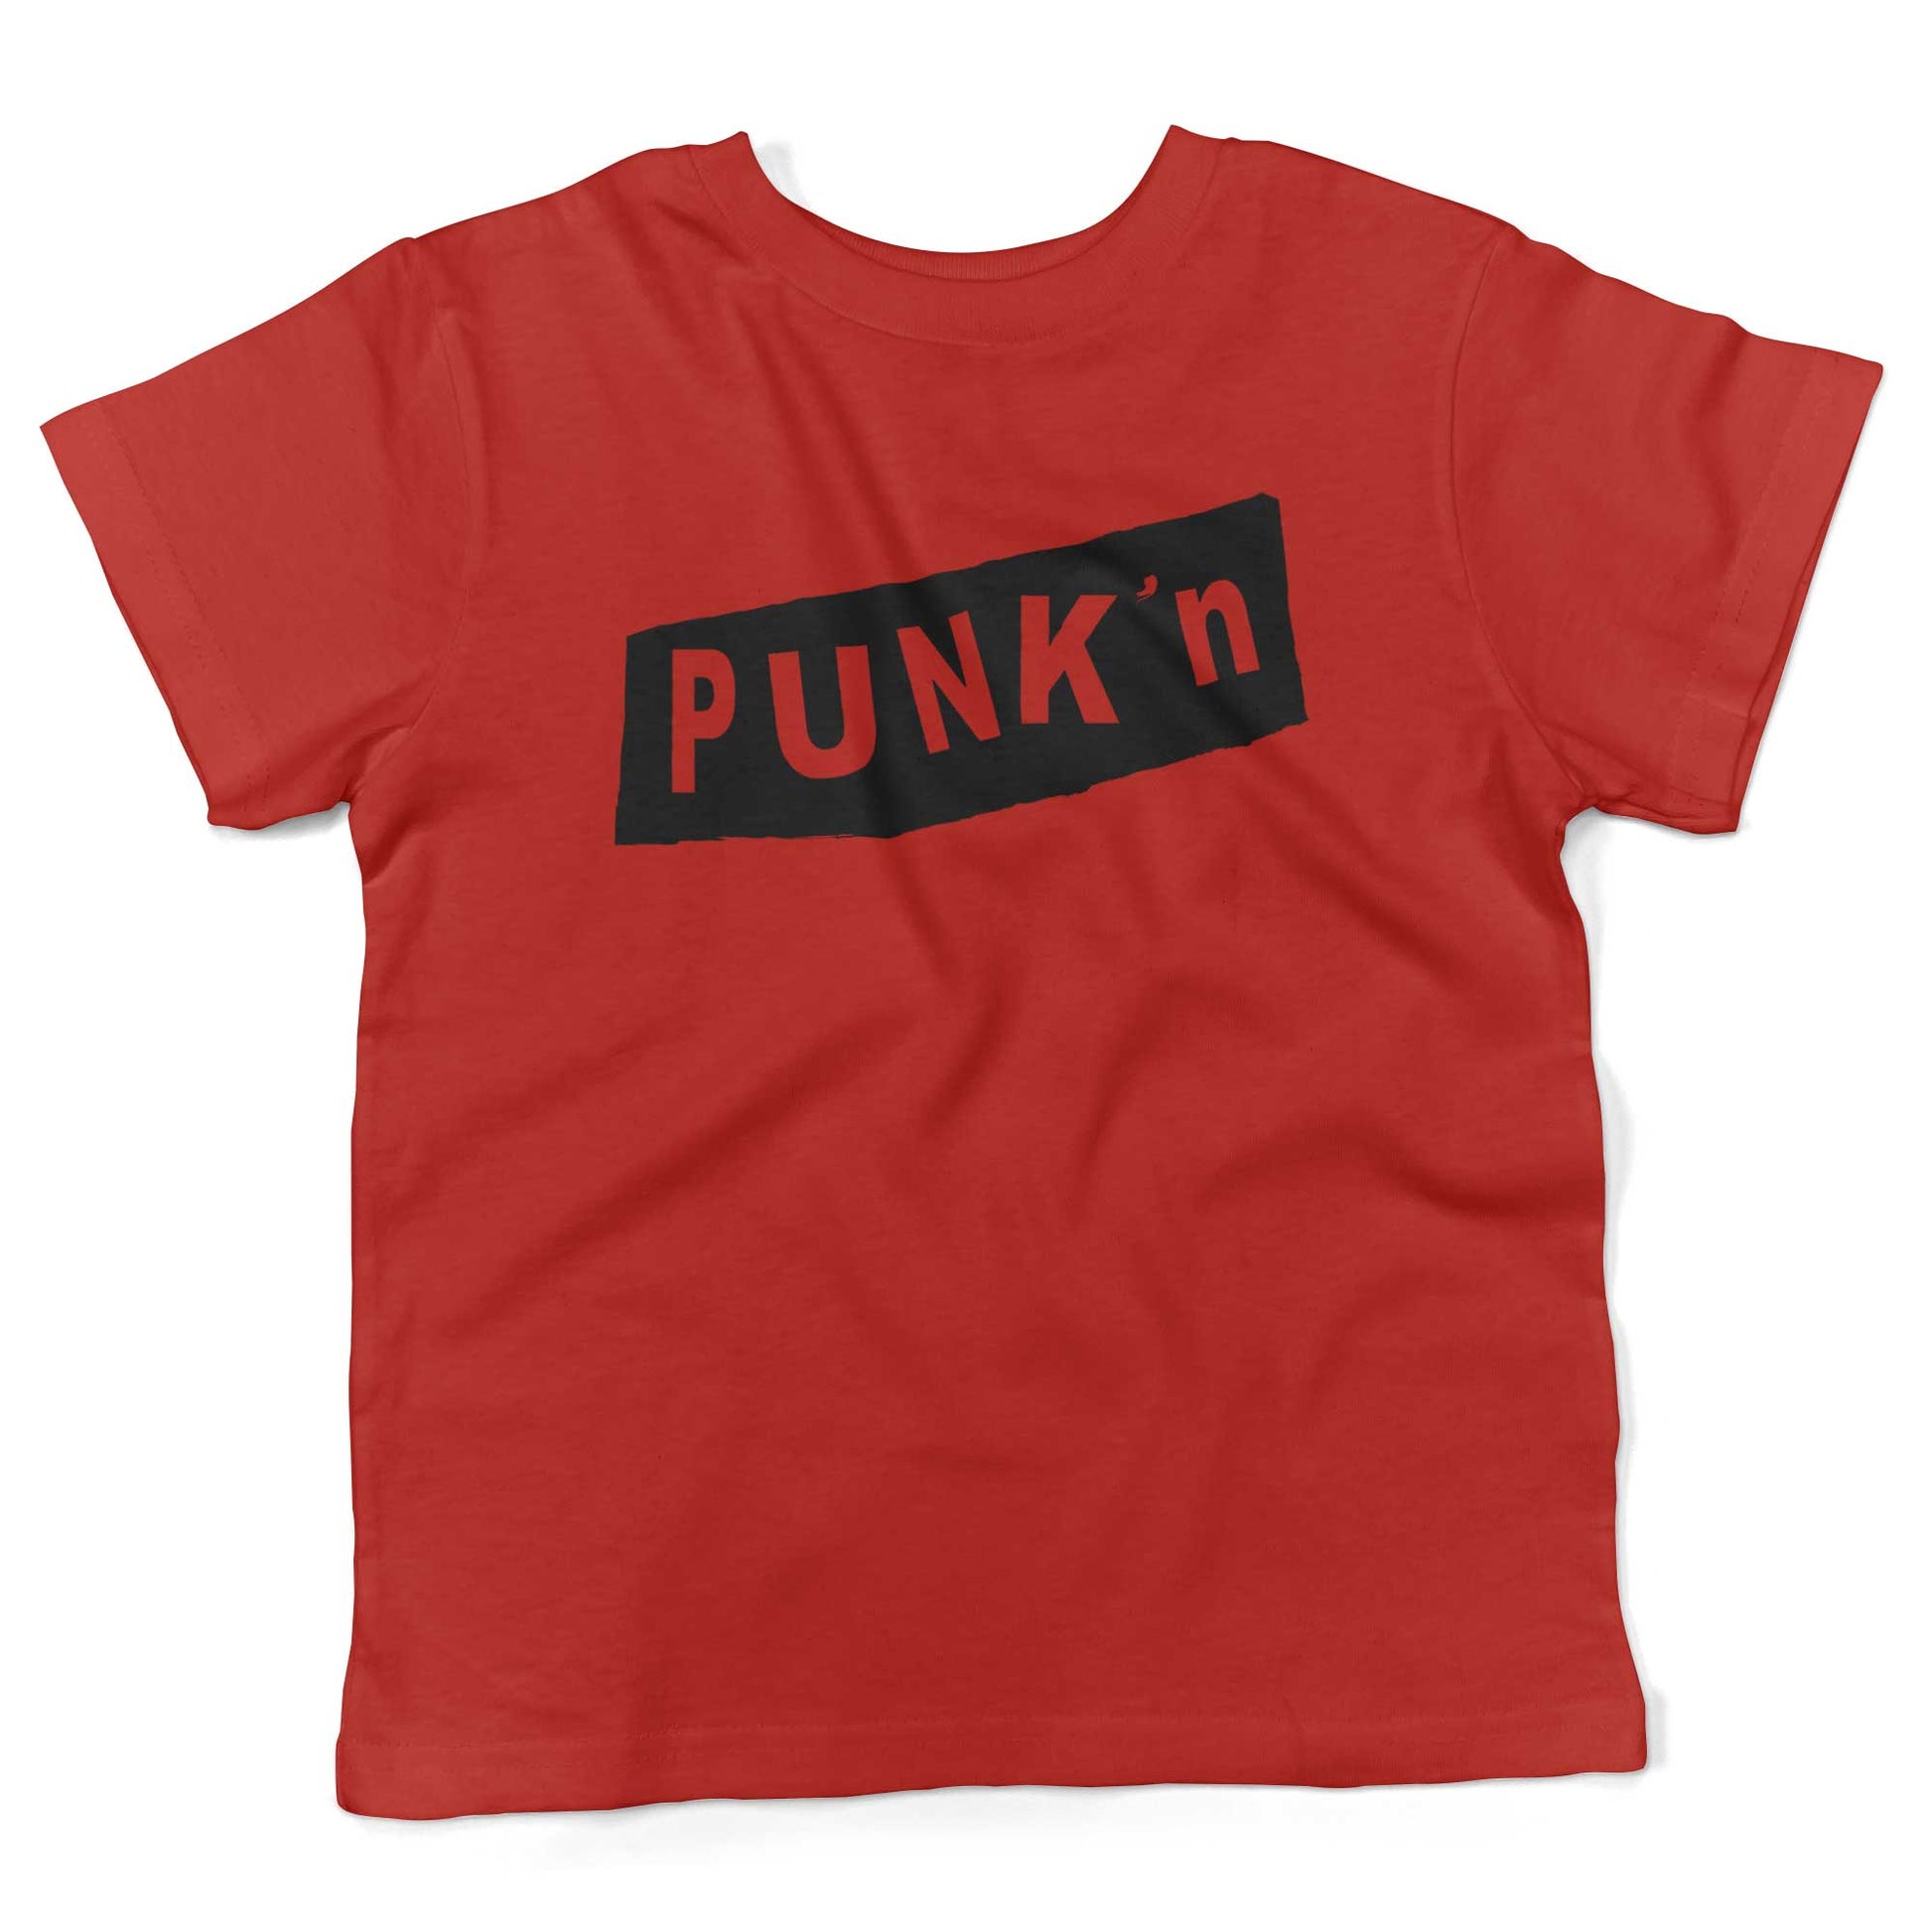 Pumpkin Punk'n Toddler Shirt-Red-2T